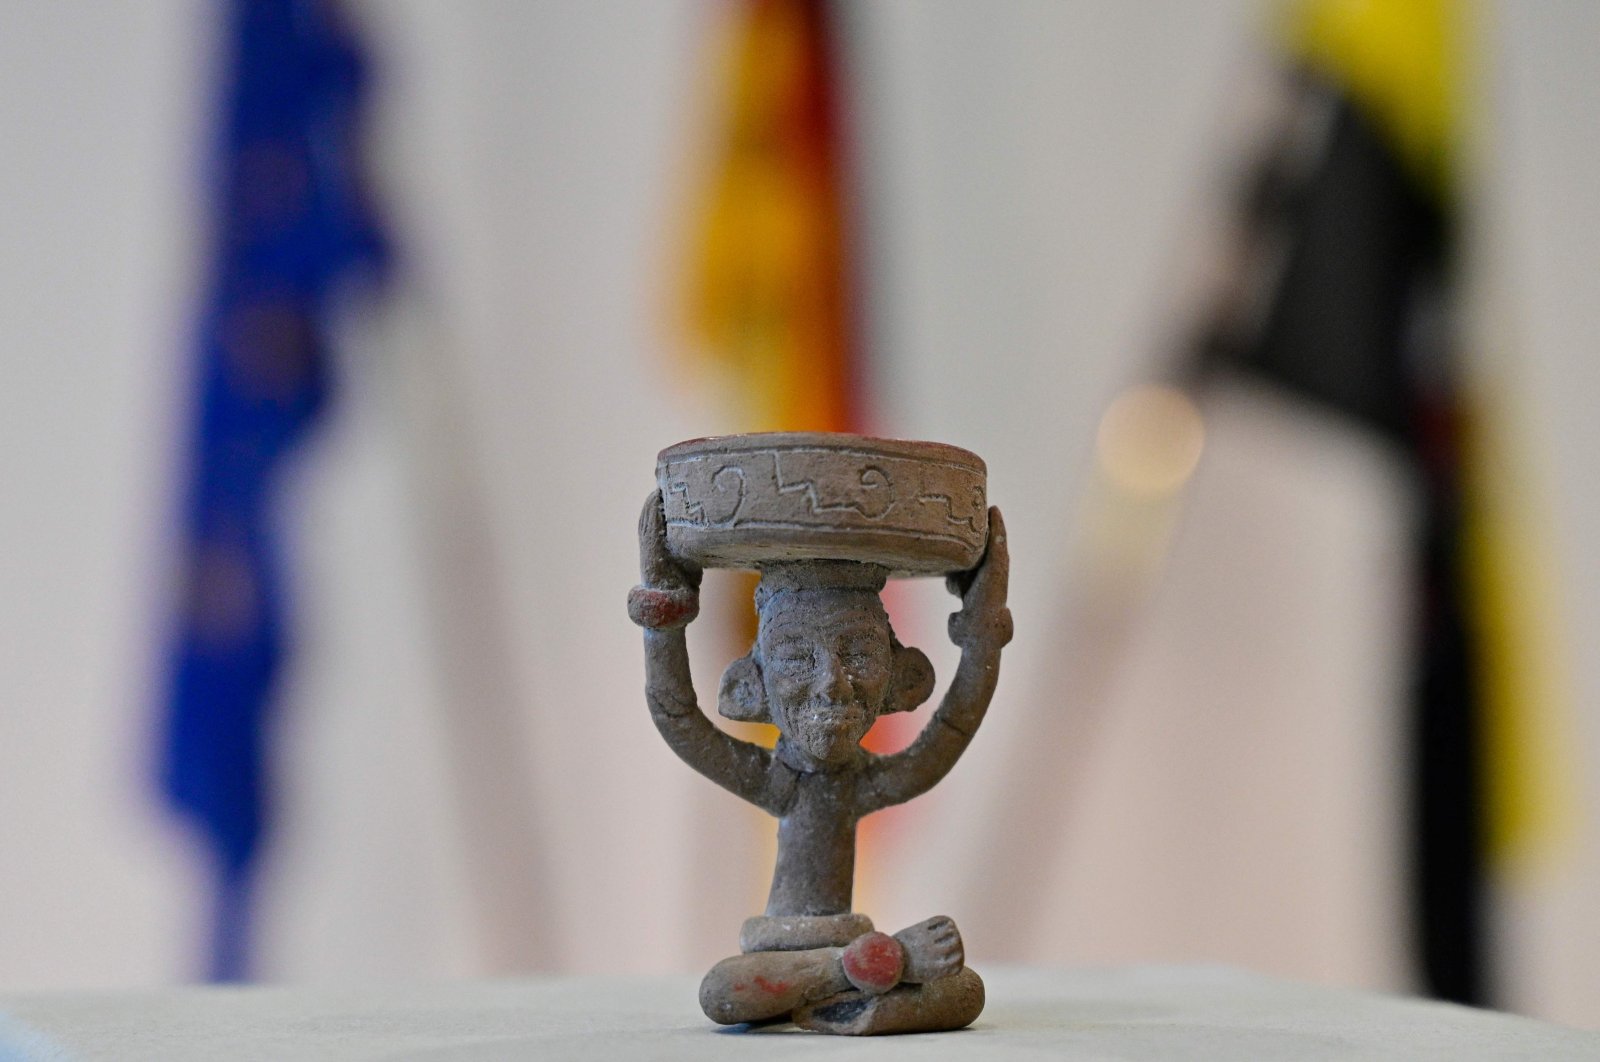 Jerman mengembalikan artefak bersejarah Maya ke Guatemala, Meksiko